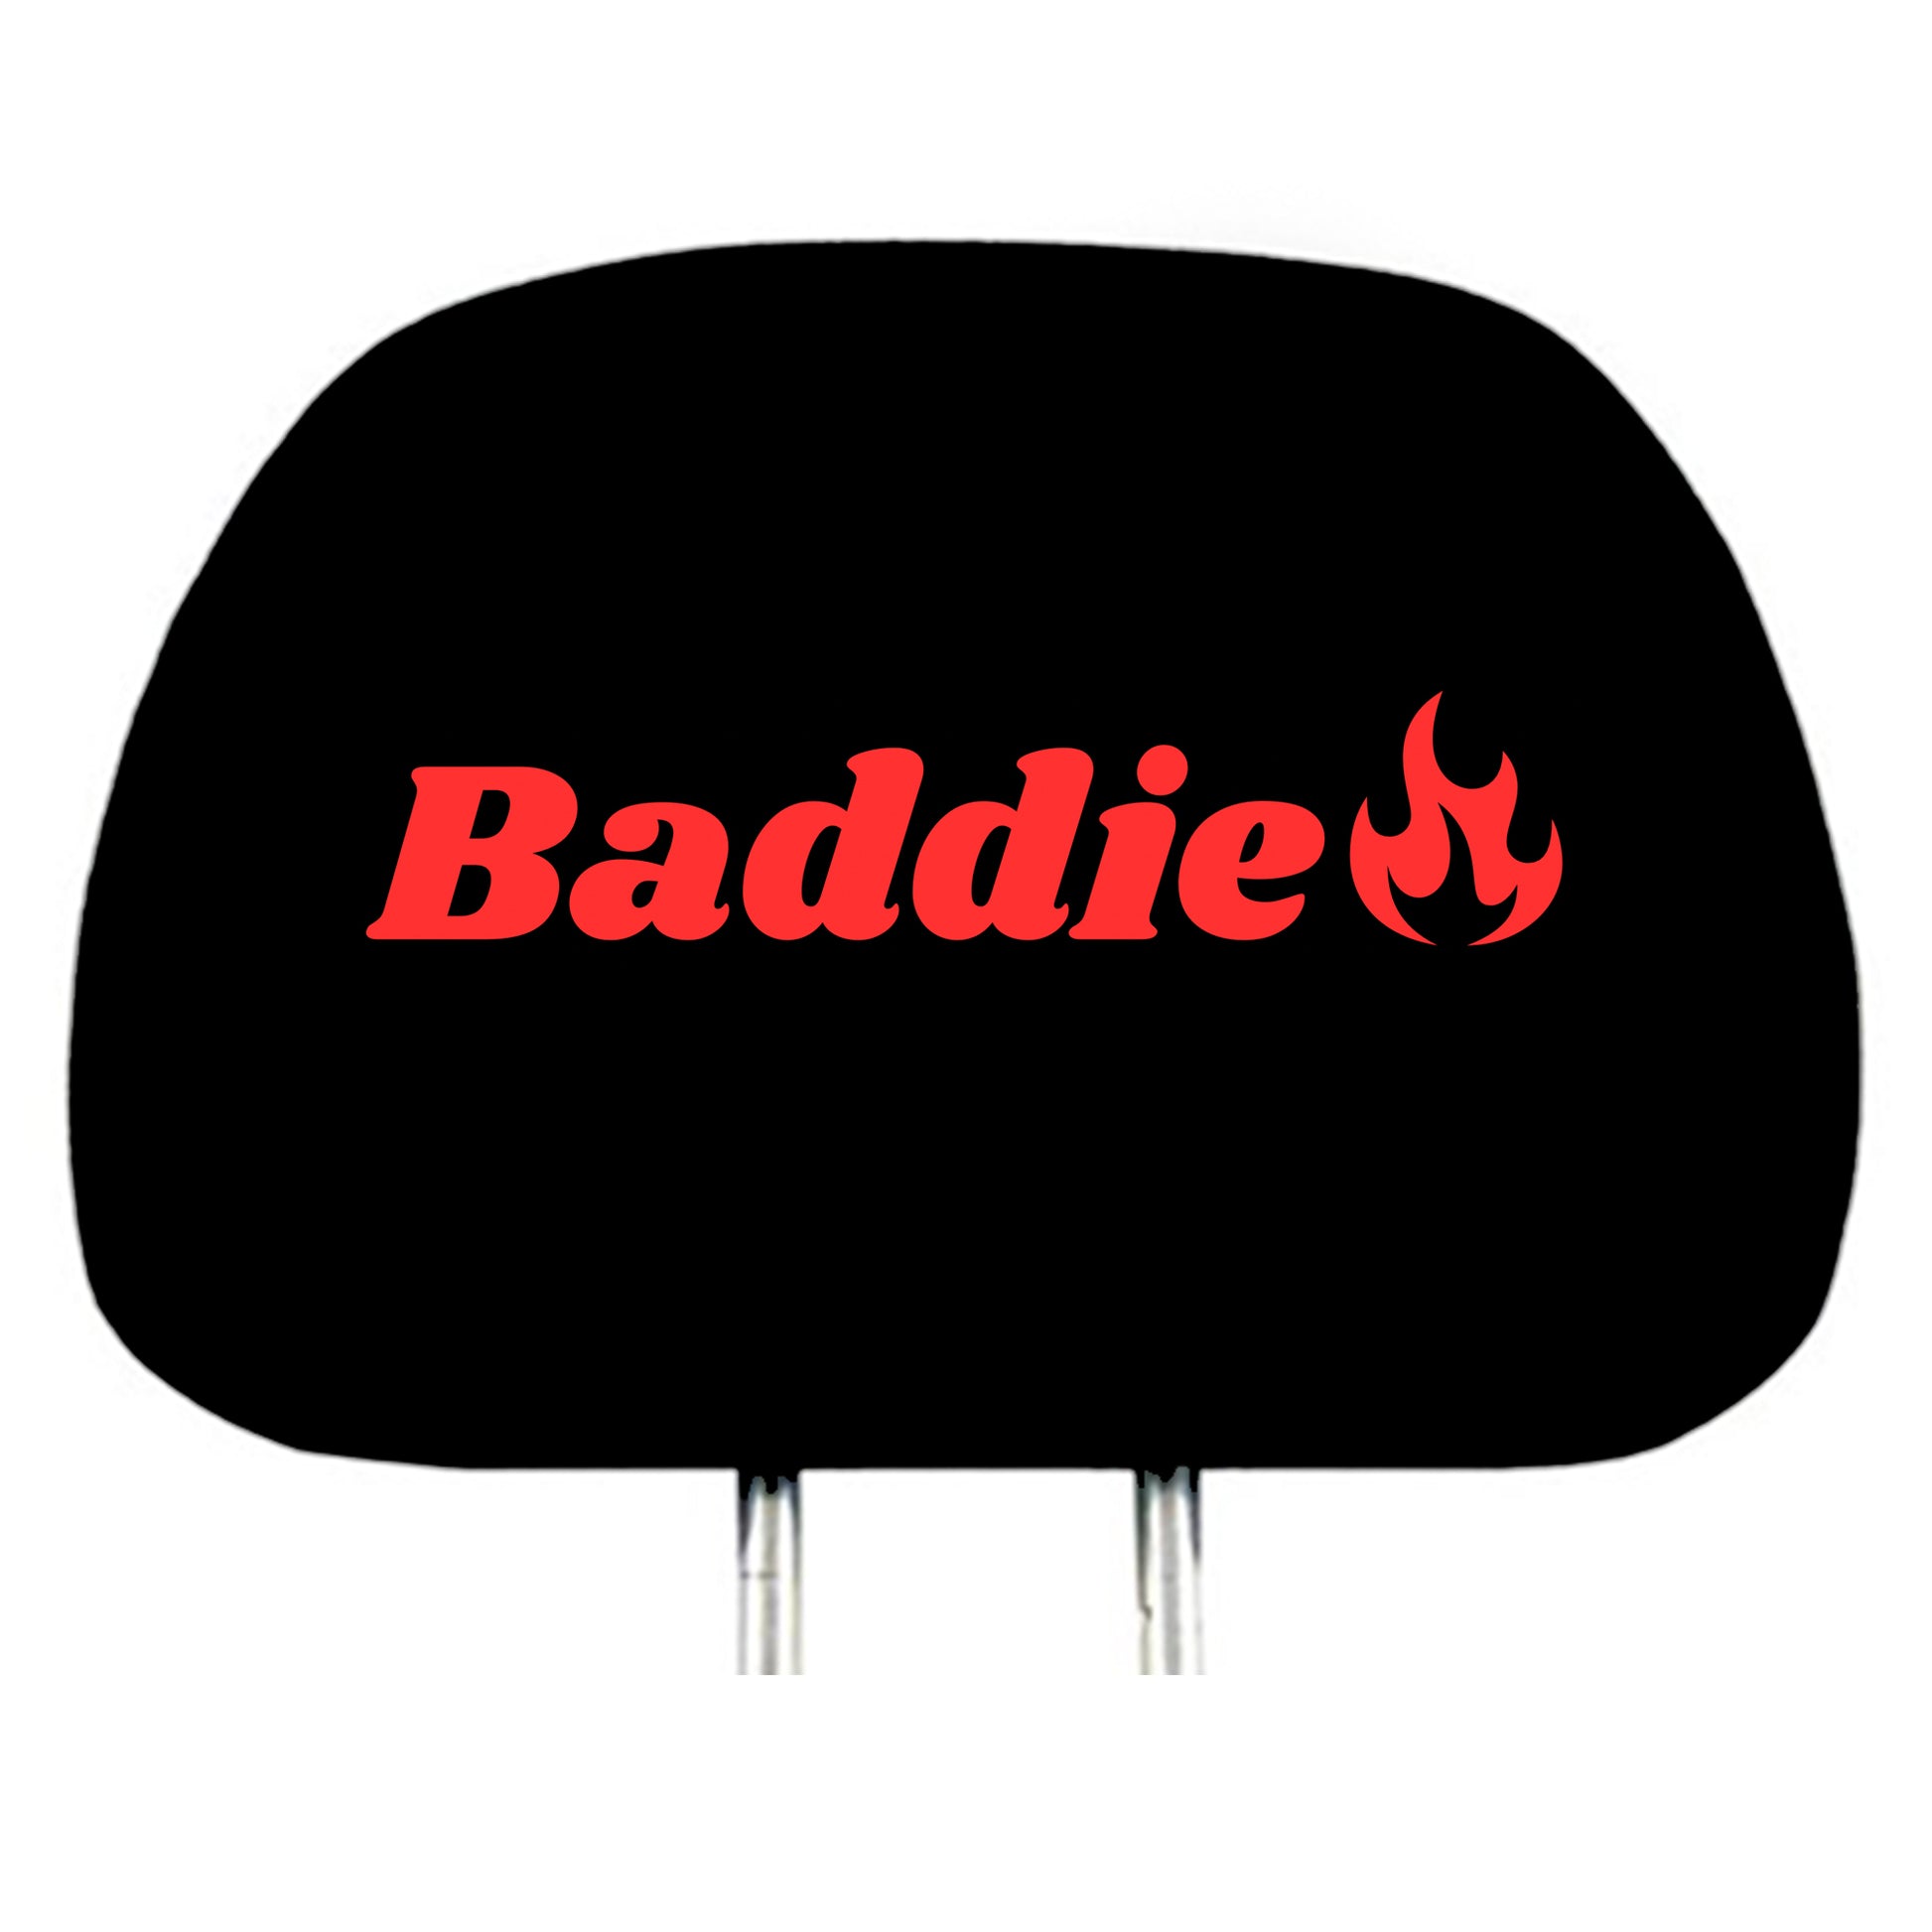 Baddie design headrest cover design